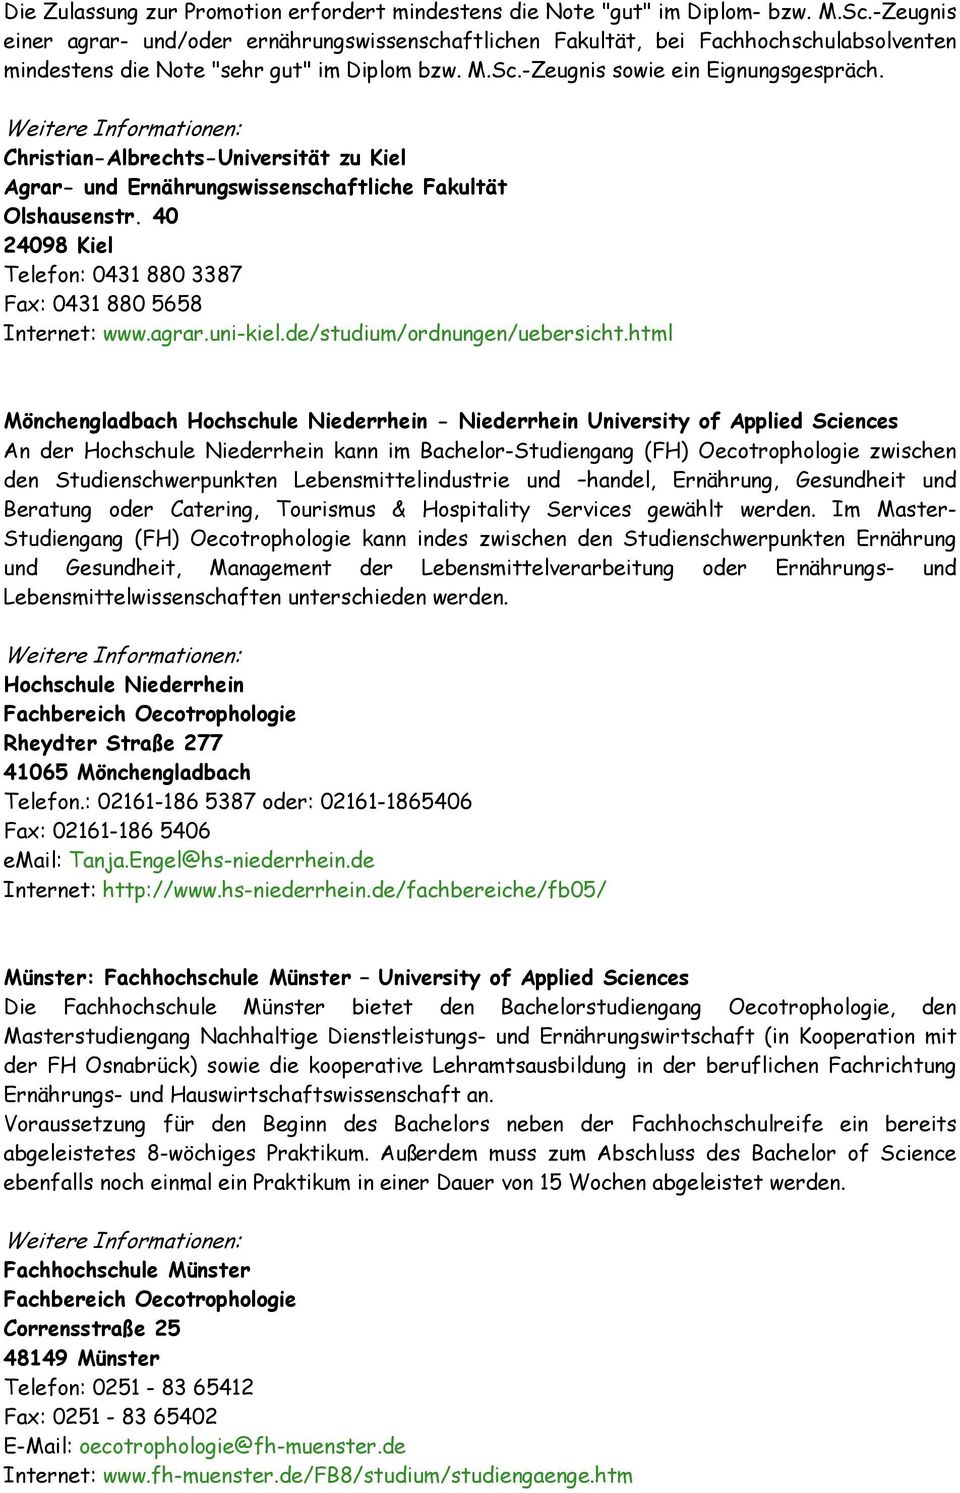 Christian-Albrechts-Universität zu Kiel Agrar- und Ernährungswissenschaftliche Fakultät Olshausenstr. 40 24098 Kiel Telefon: 0431 880 3387 Fax: 0431 880 5658 Internet: www.agrar.uni-kiel.